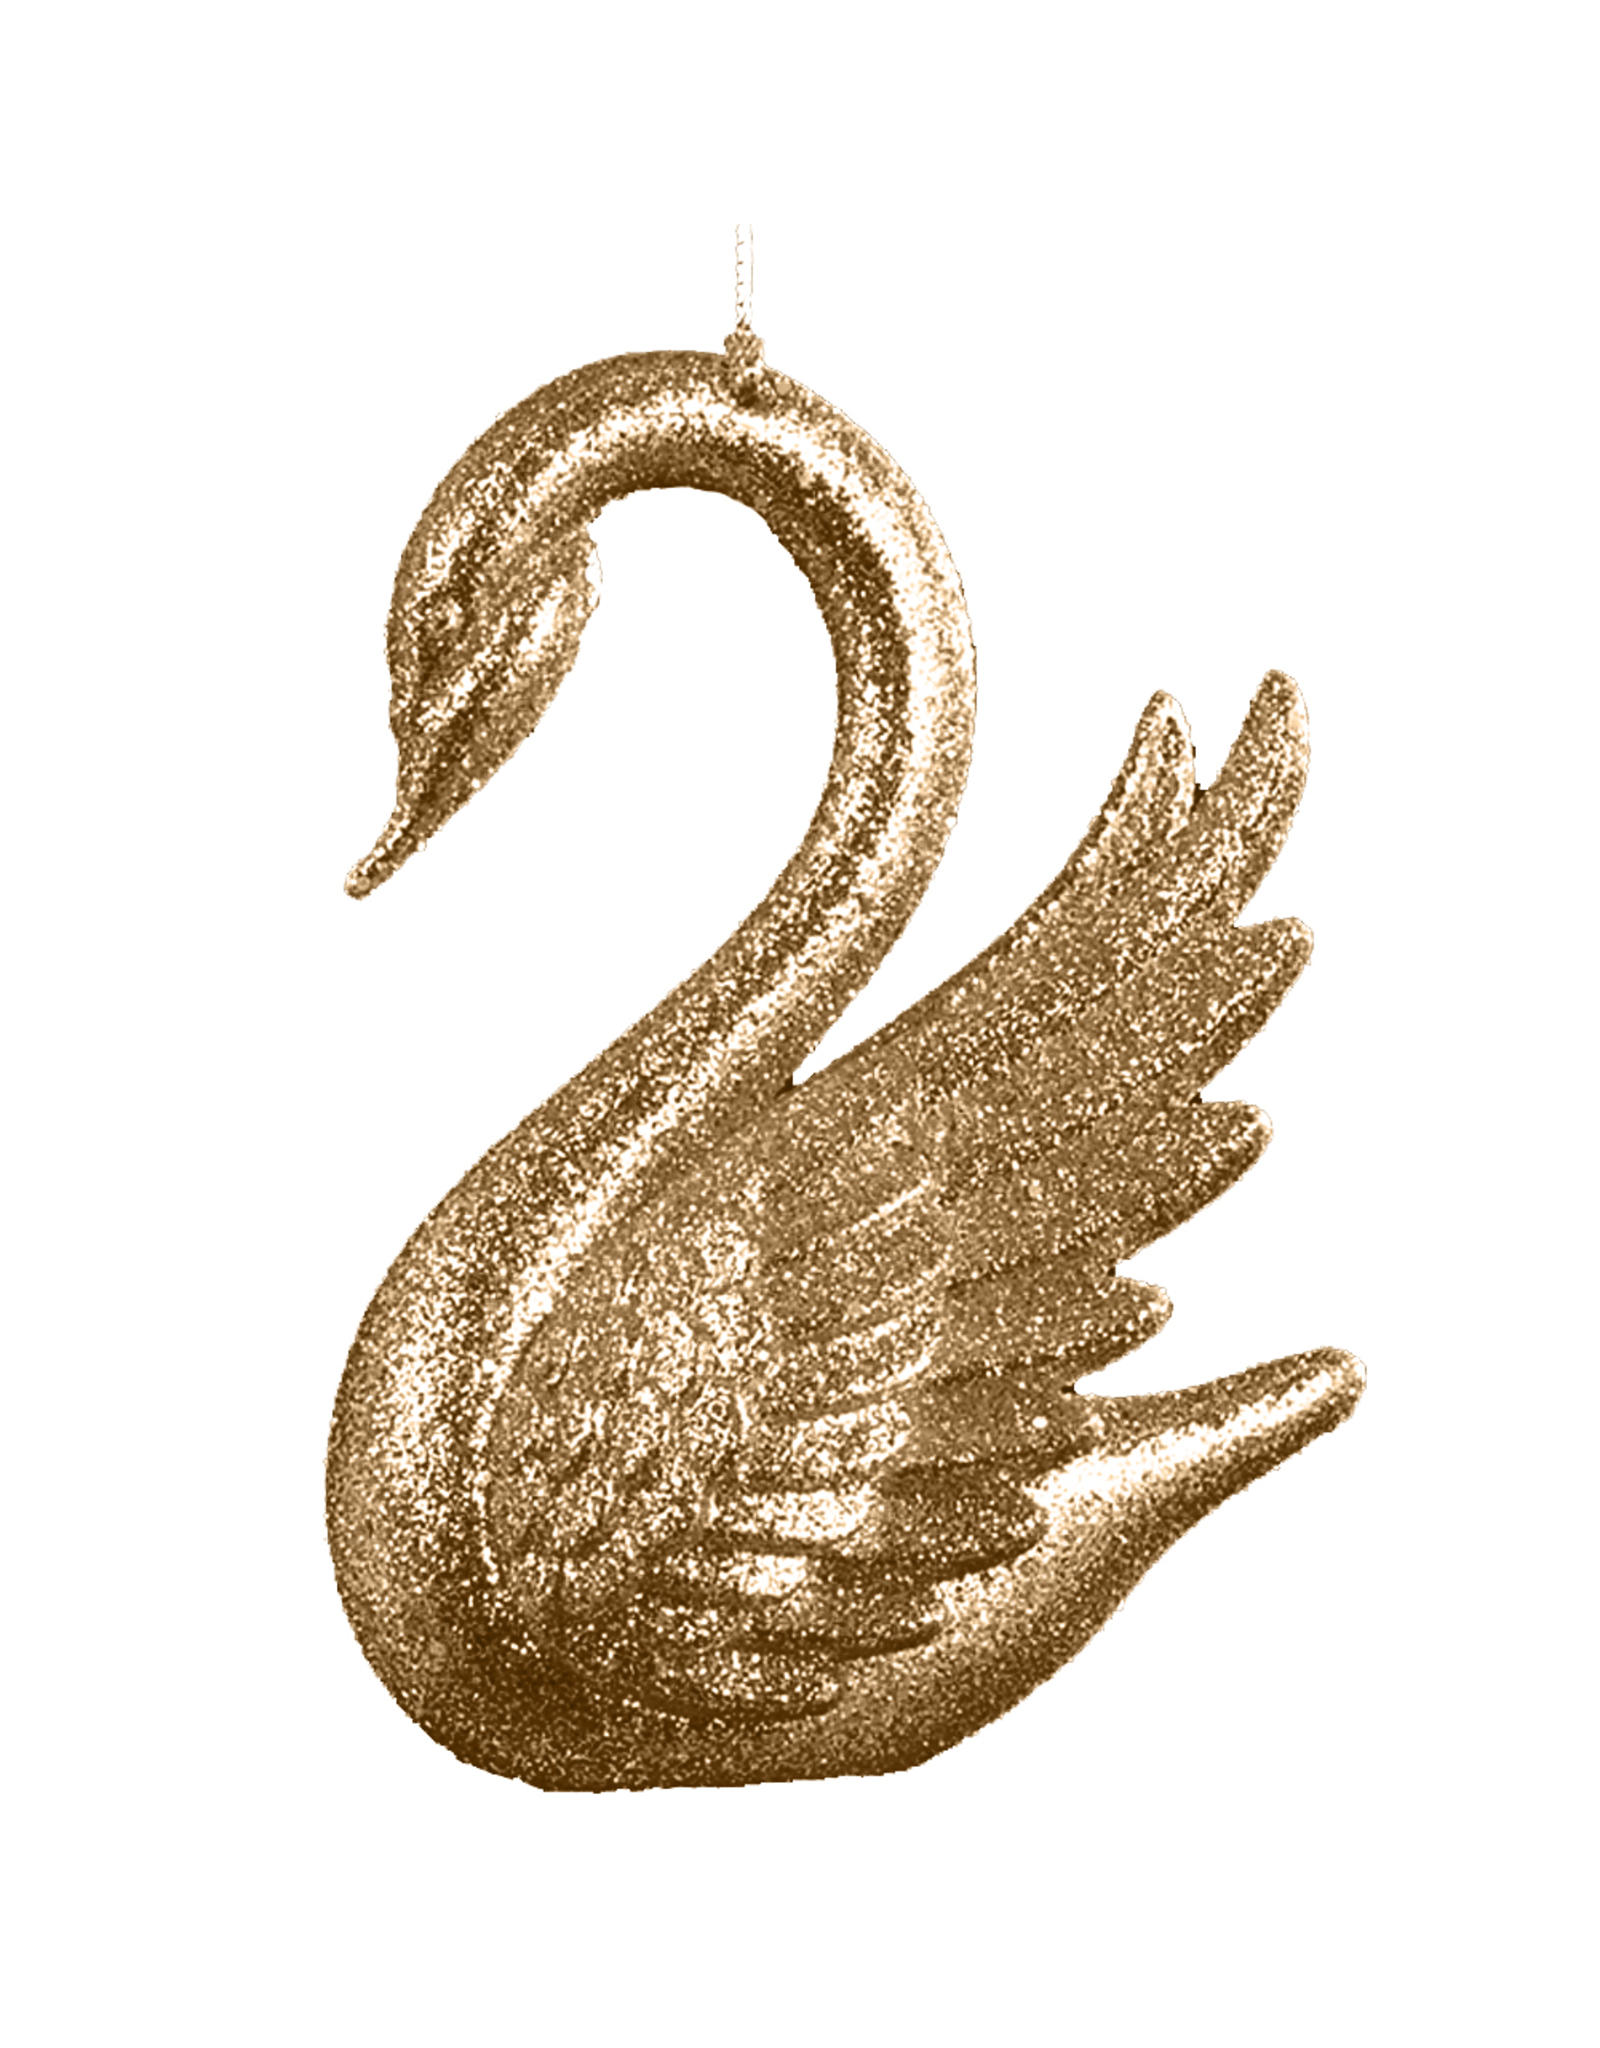 Kurt Adler Christmas Tree Ornament w Gold Glittered Swan